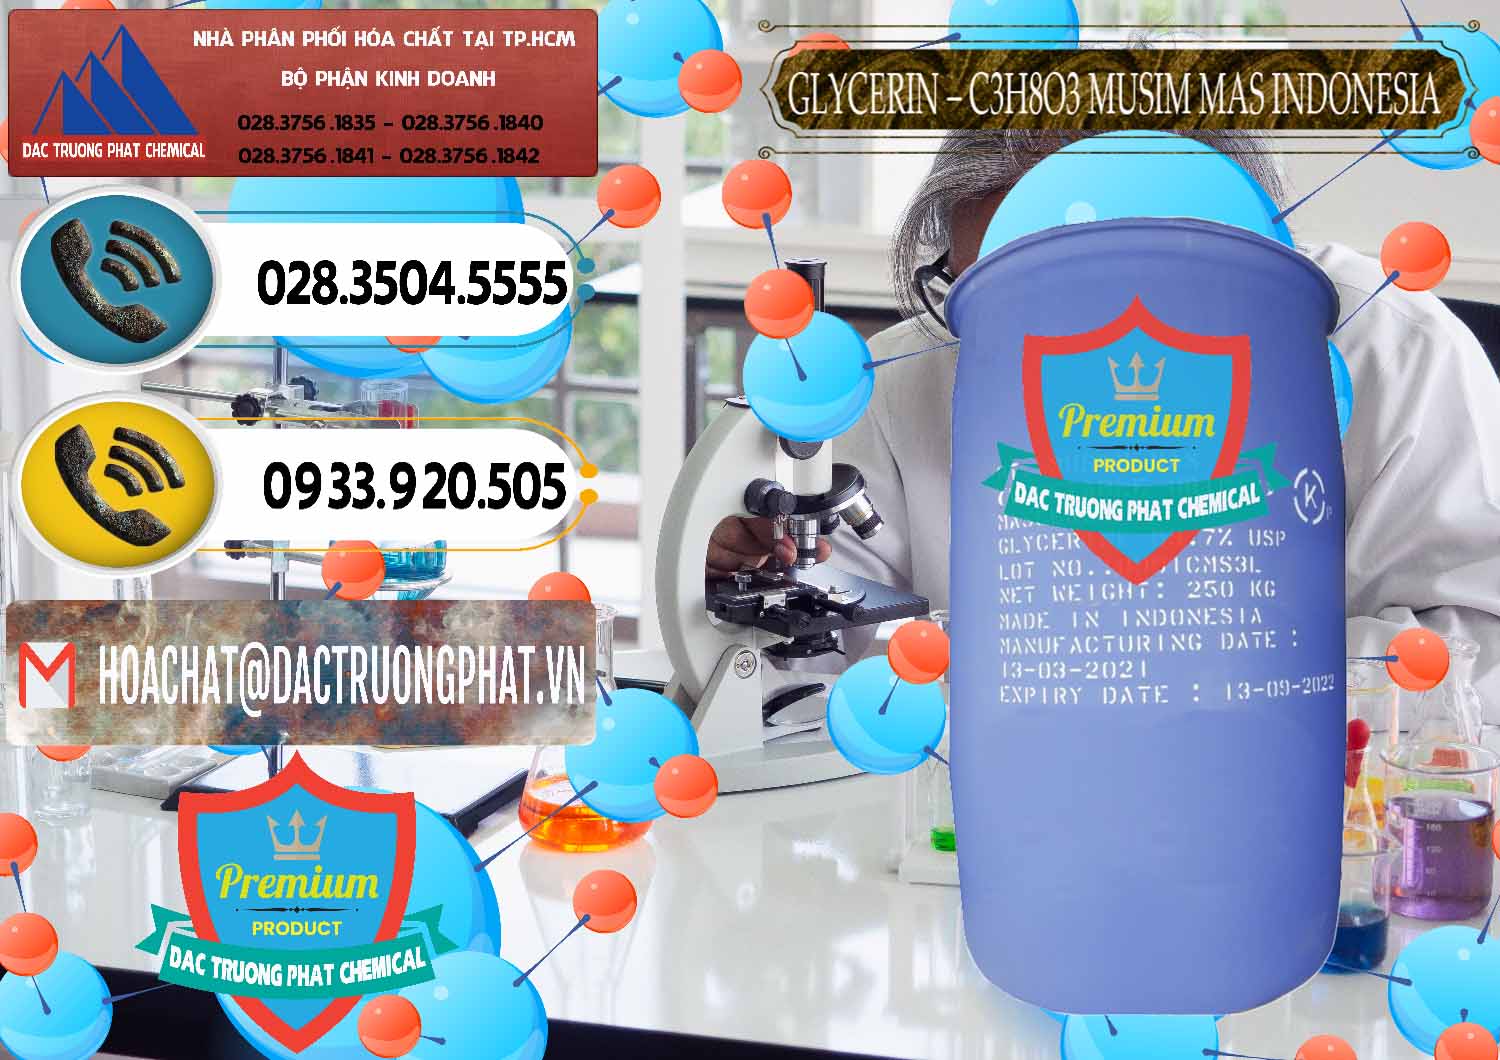 Công ty chuyên cung cấp & bán Glycerin – C3H8O3 99.7% Musim Mas Indonesia - 0272 - Phân phối hóa chất tại TP.HCM - hoachatdetnhuom.vn